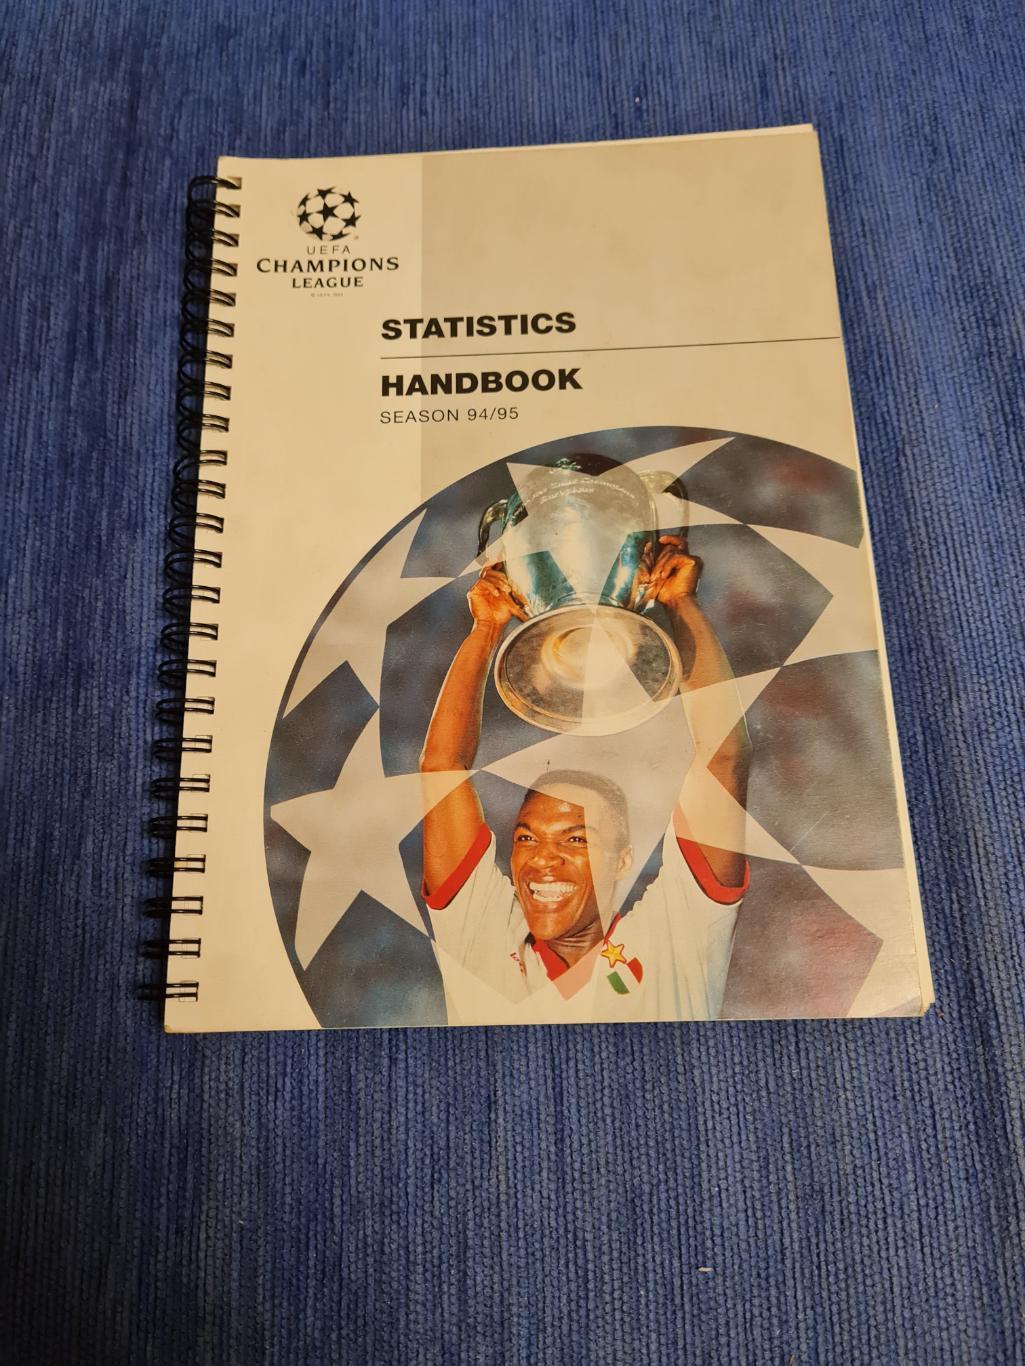 Statistics Handbook. 1994/95. Лига чемпионов. Спартак.